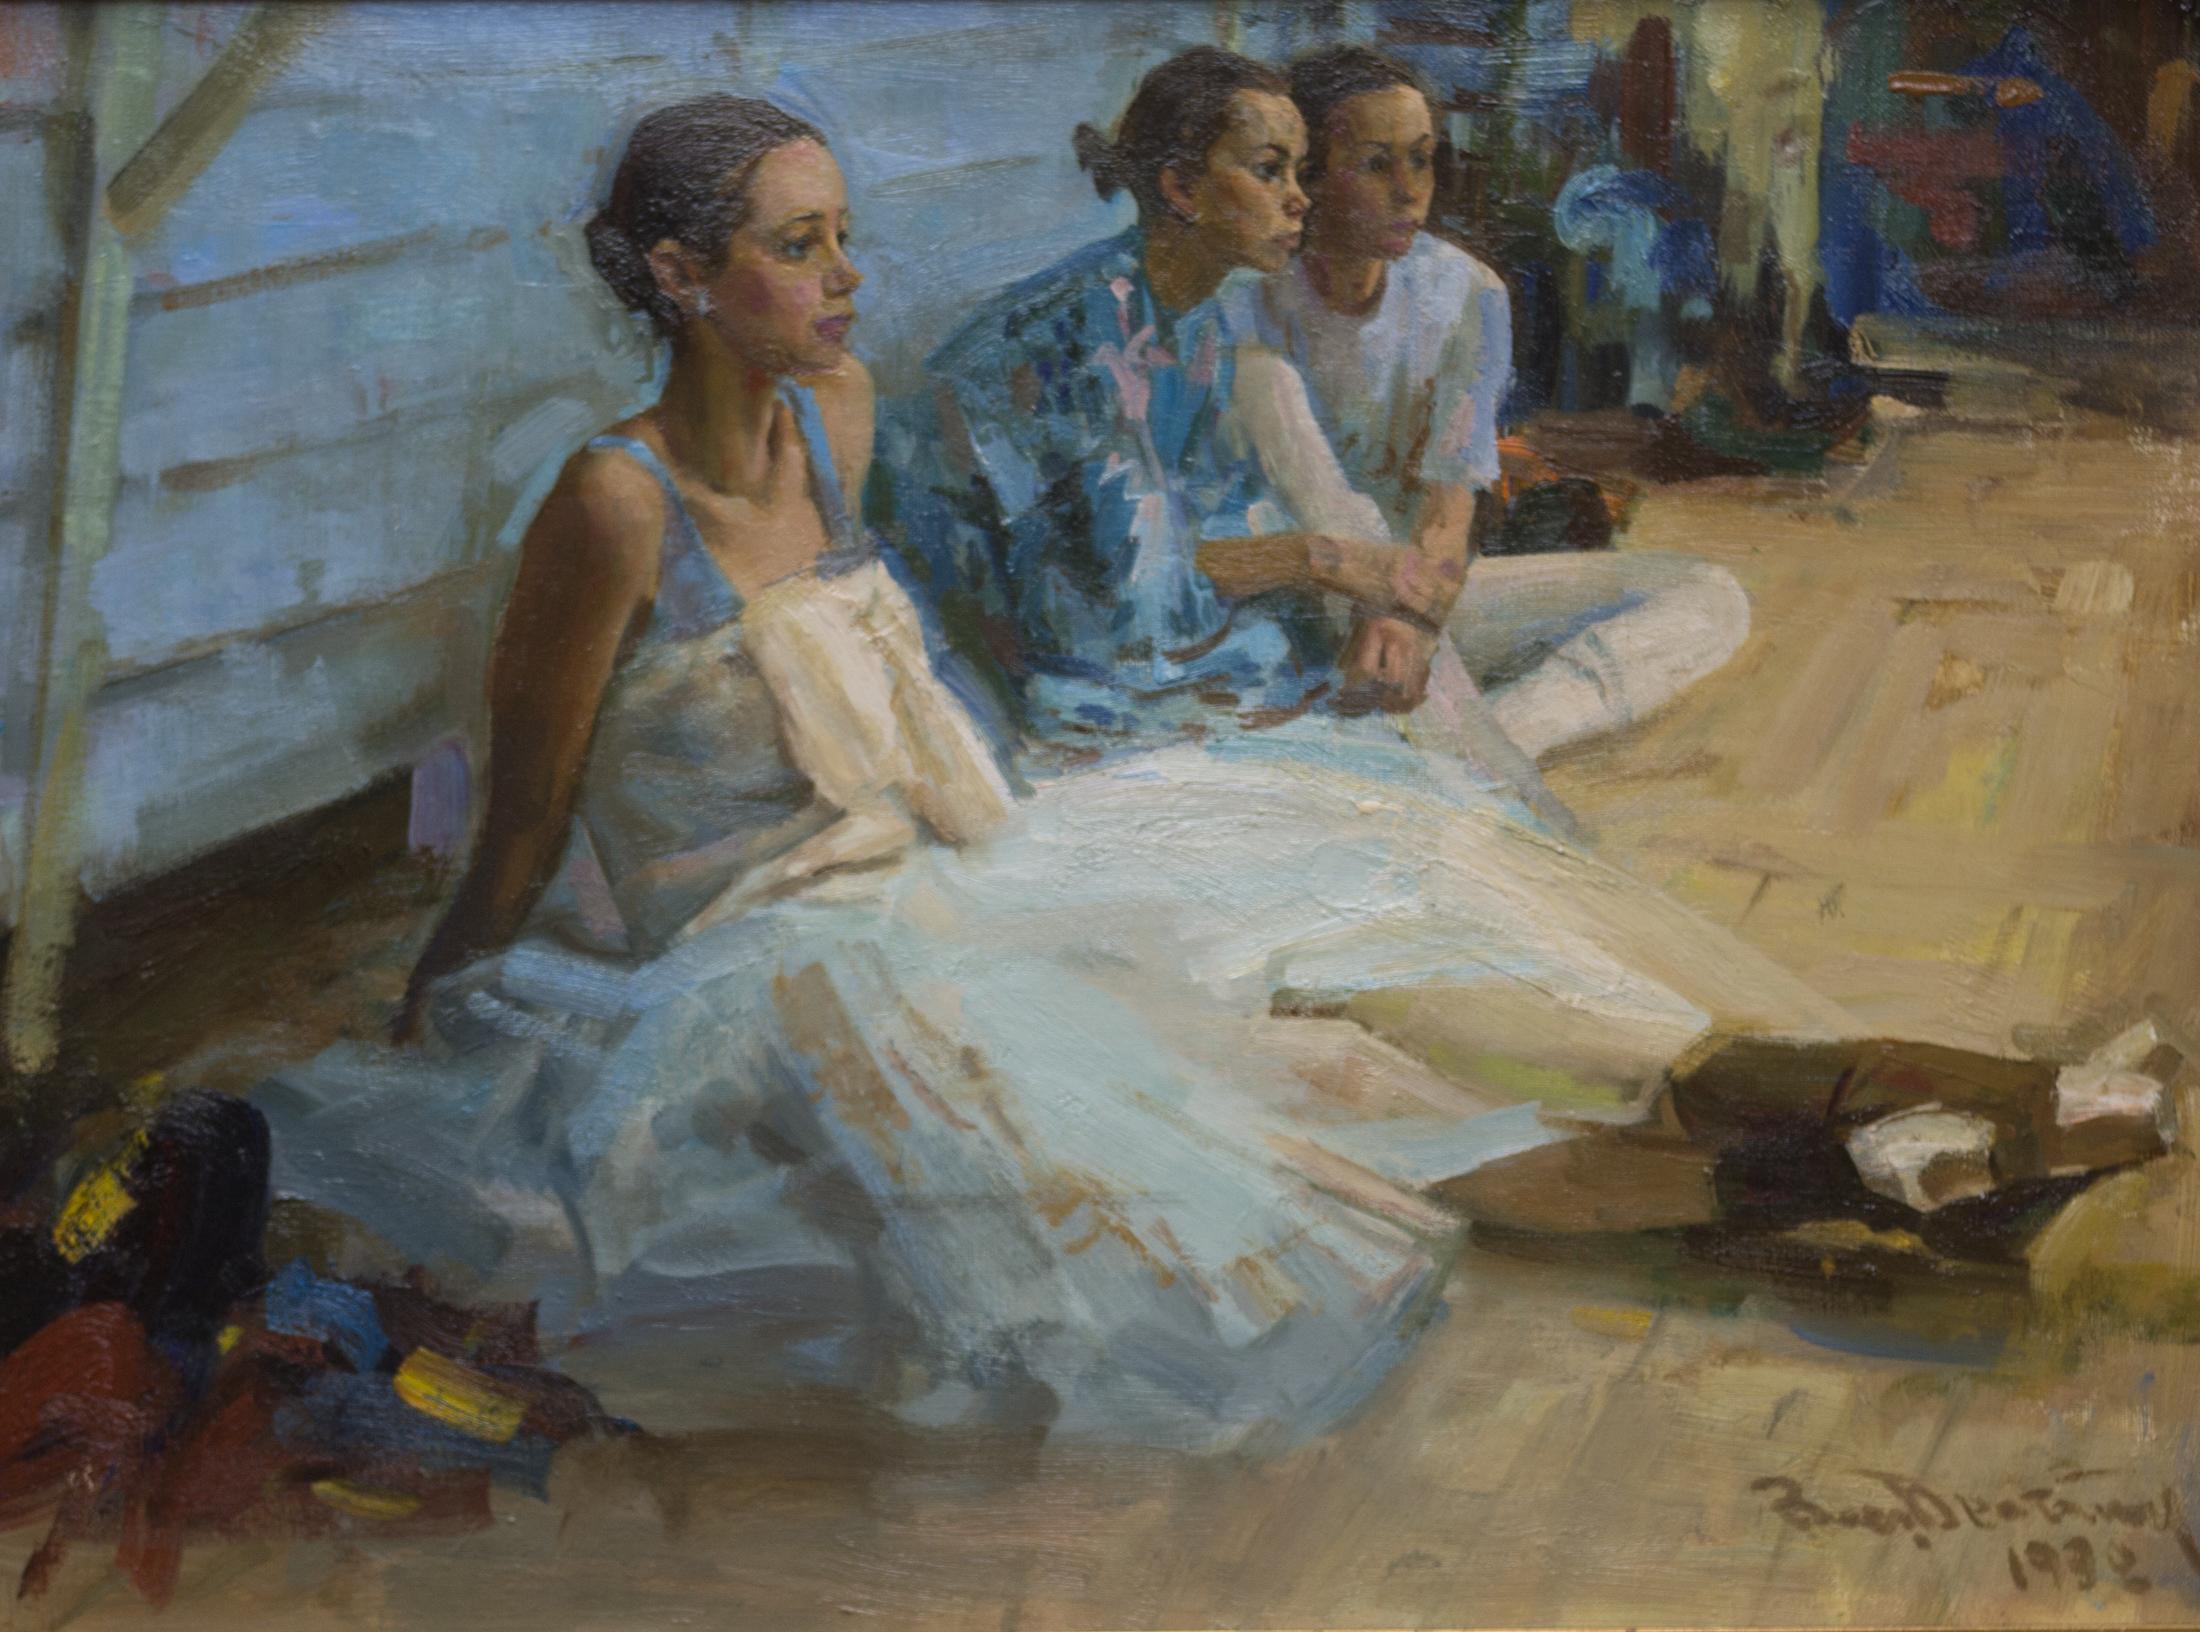 At the ballet class. Dancer J. Ayupova. Original modern art painting